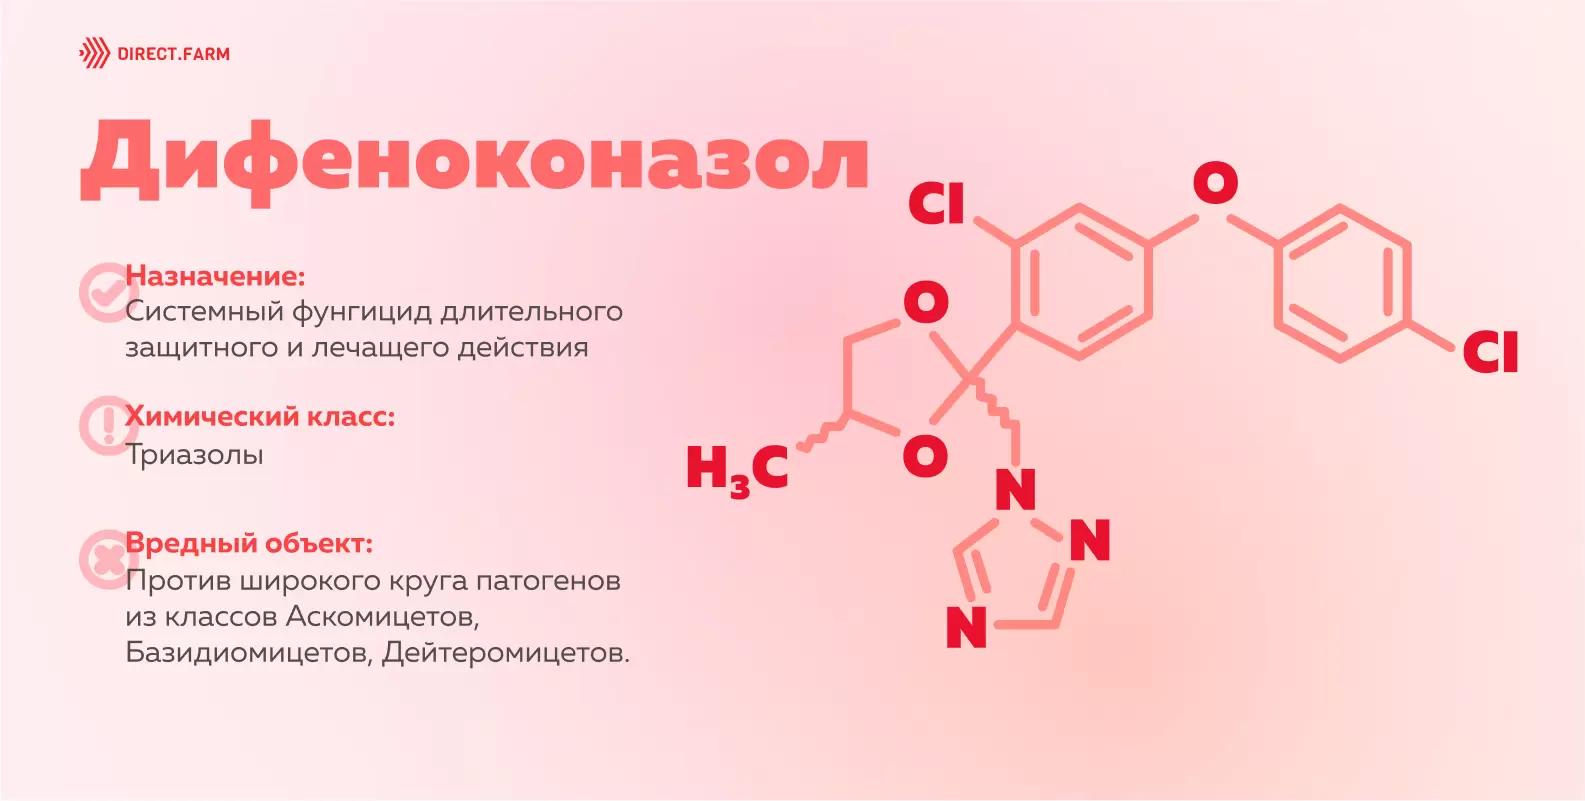 Дифеноконазол